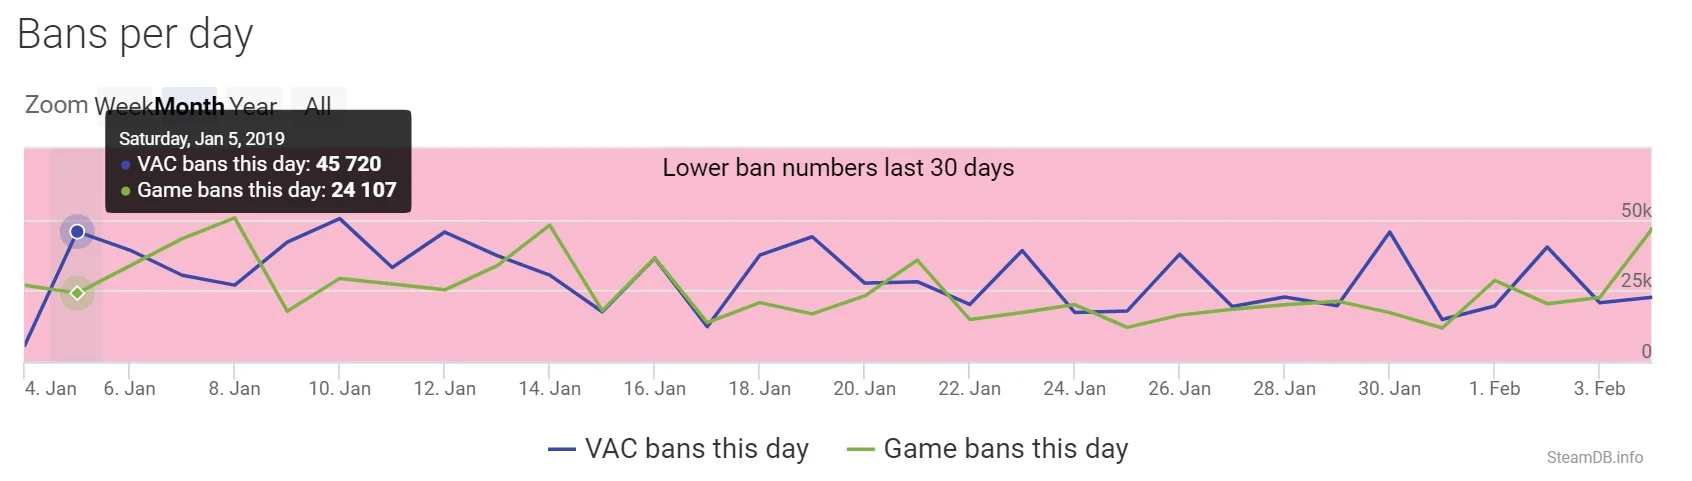 «Спасибо бесплатному CS:GO». В январе Valve Anti-Cheat забанила 900 тыс. аккаунтов. Это рекорд - фото 3